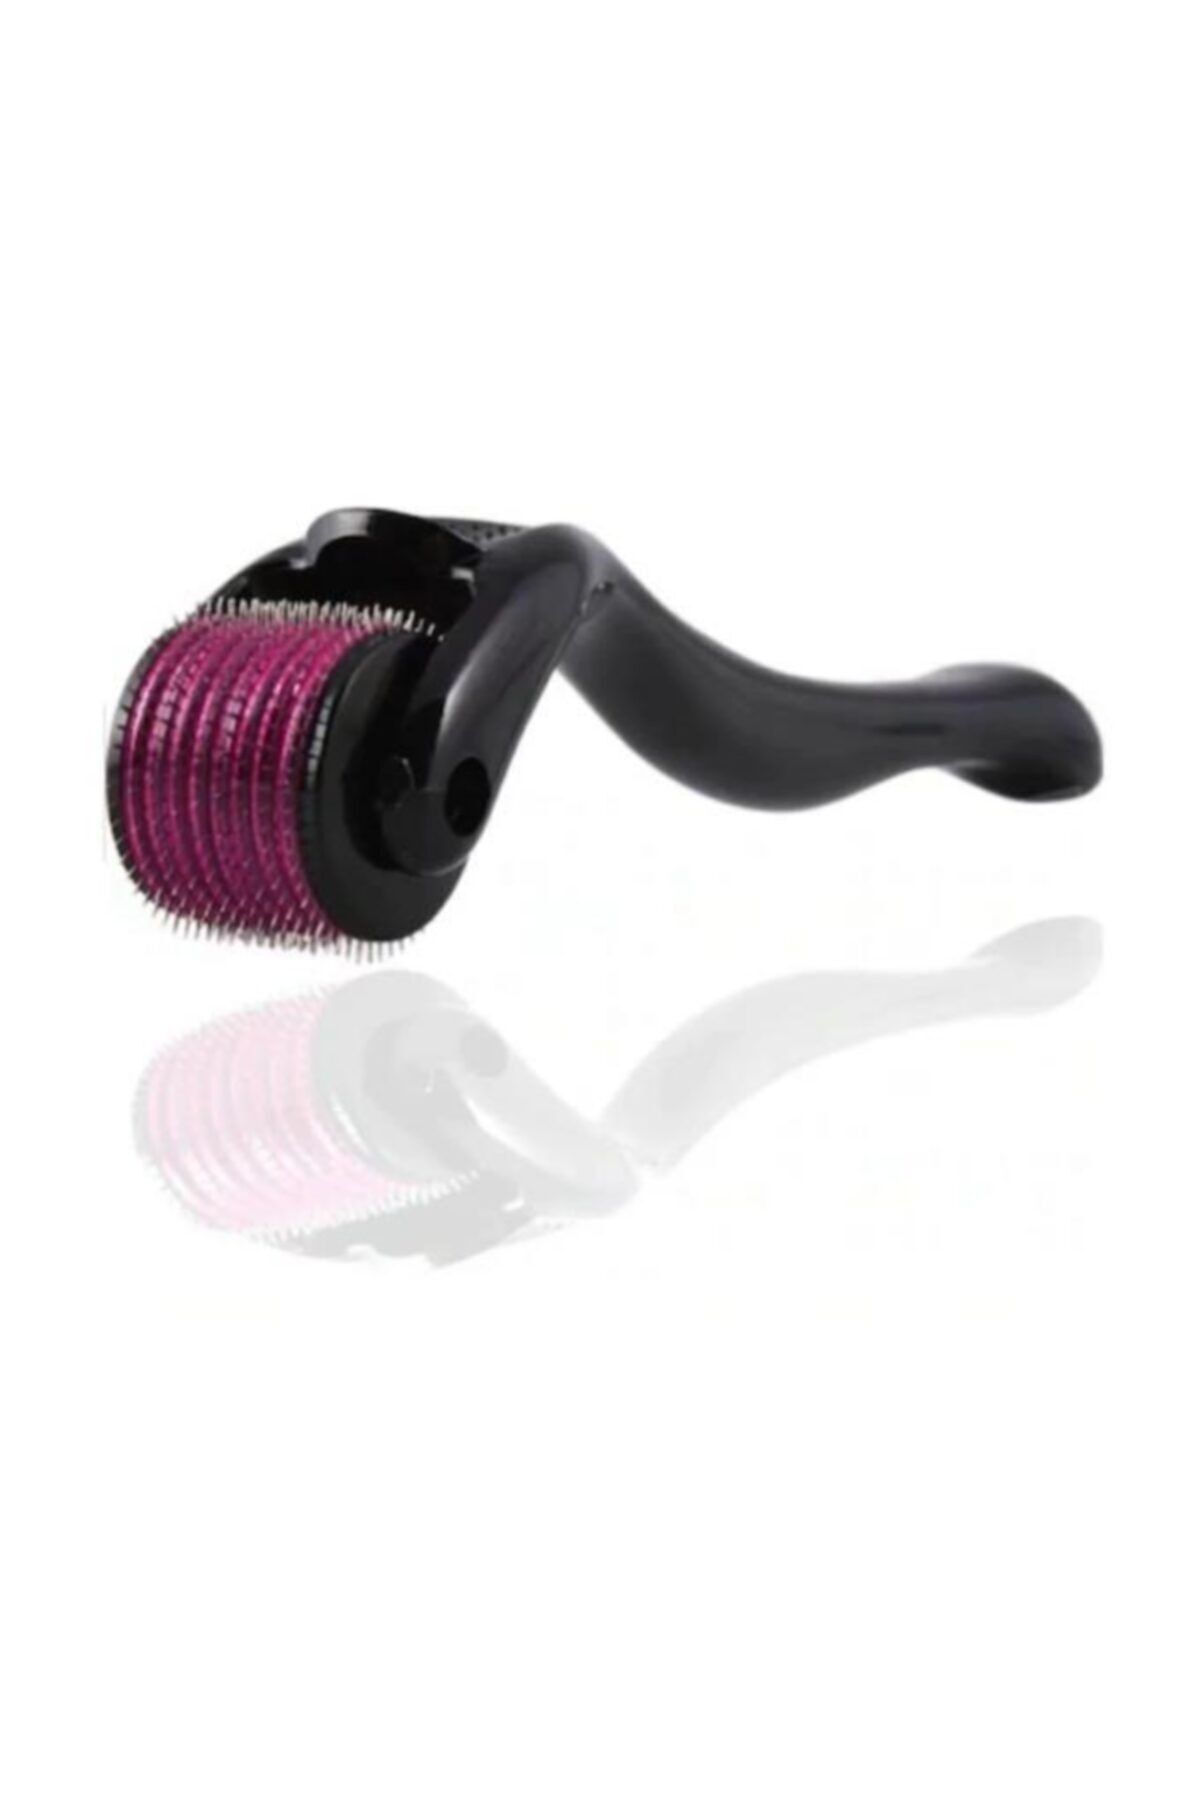 Evene Dermaroller Saç Çıkarma Tarağı İğneli Tarak Dermapen Roller 1 mm Saklama Kabı